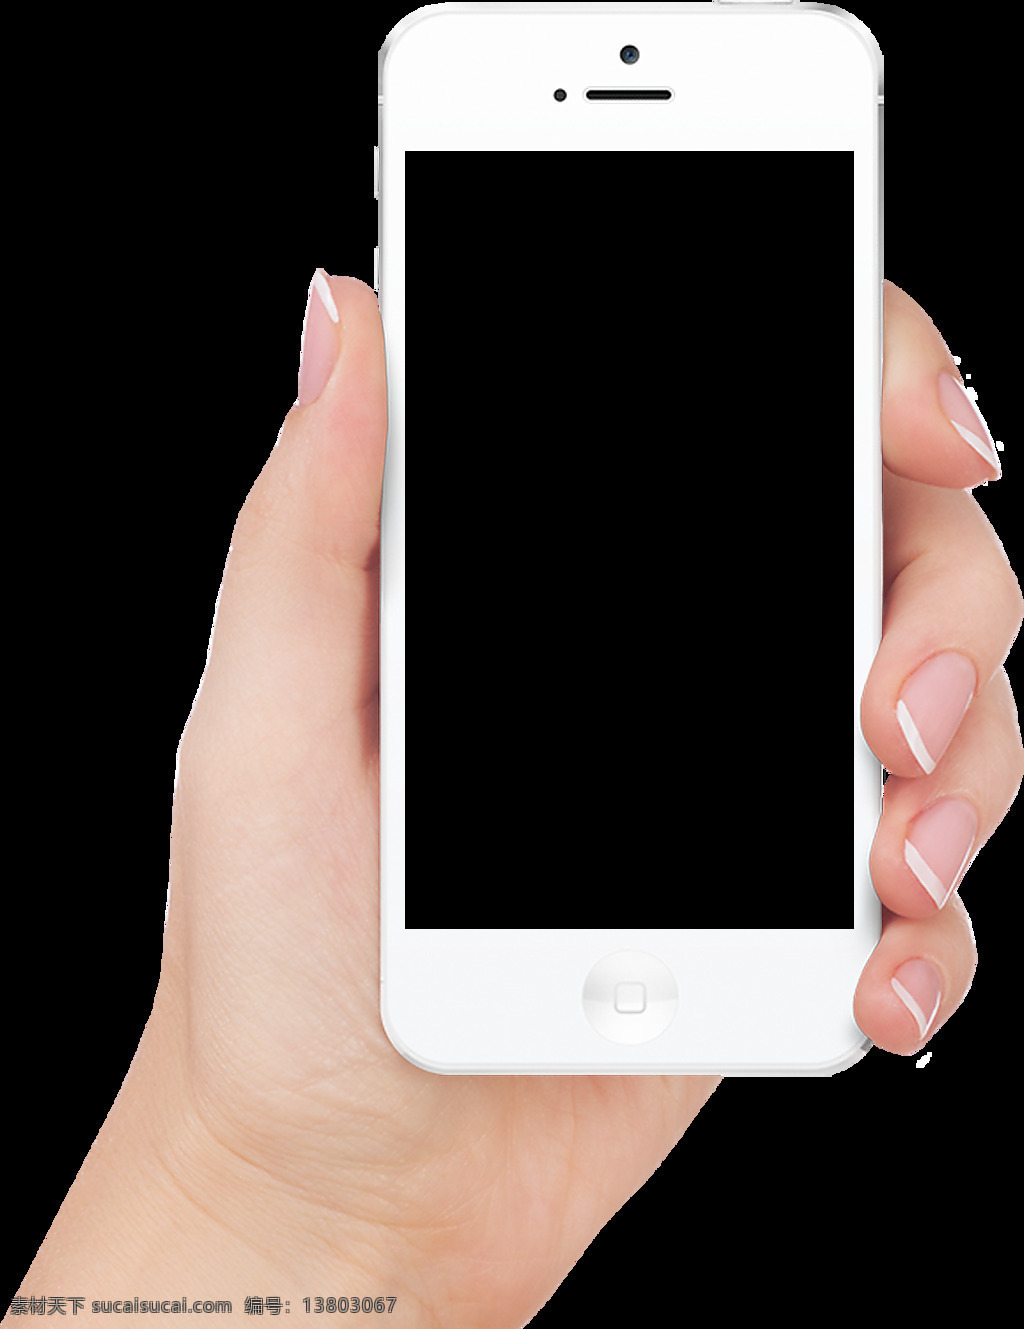 苹果手机素材 苹果手机图案 苹果手机图片 白色苹果手机 手机 手机模型 手机样机 苹果手机样机 苹果图标 iphone iphone7 iphonex 图案 模型 样机 图标 icon图标 标志 苹果logo 白色手机 手机外壳